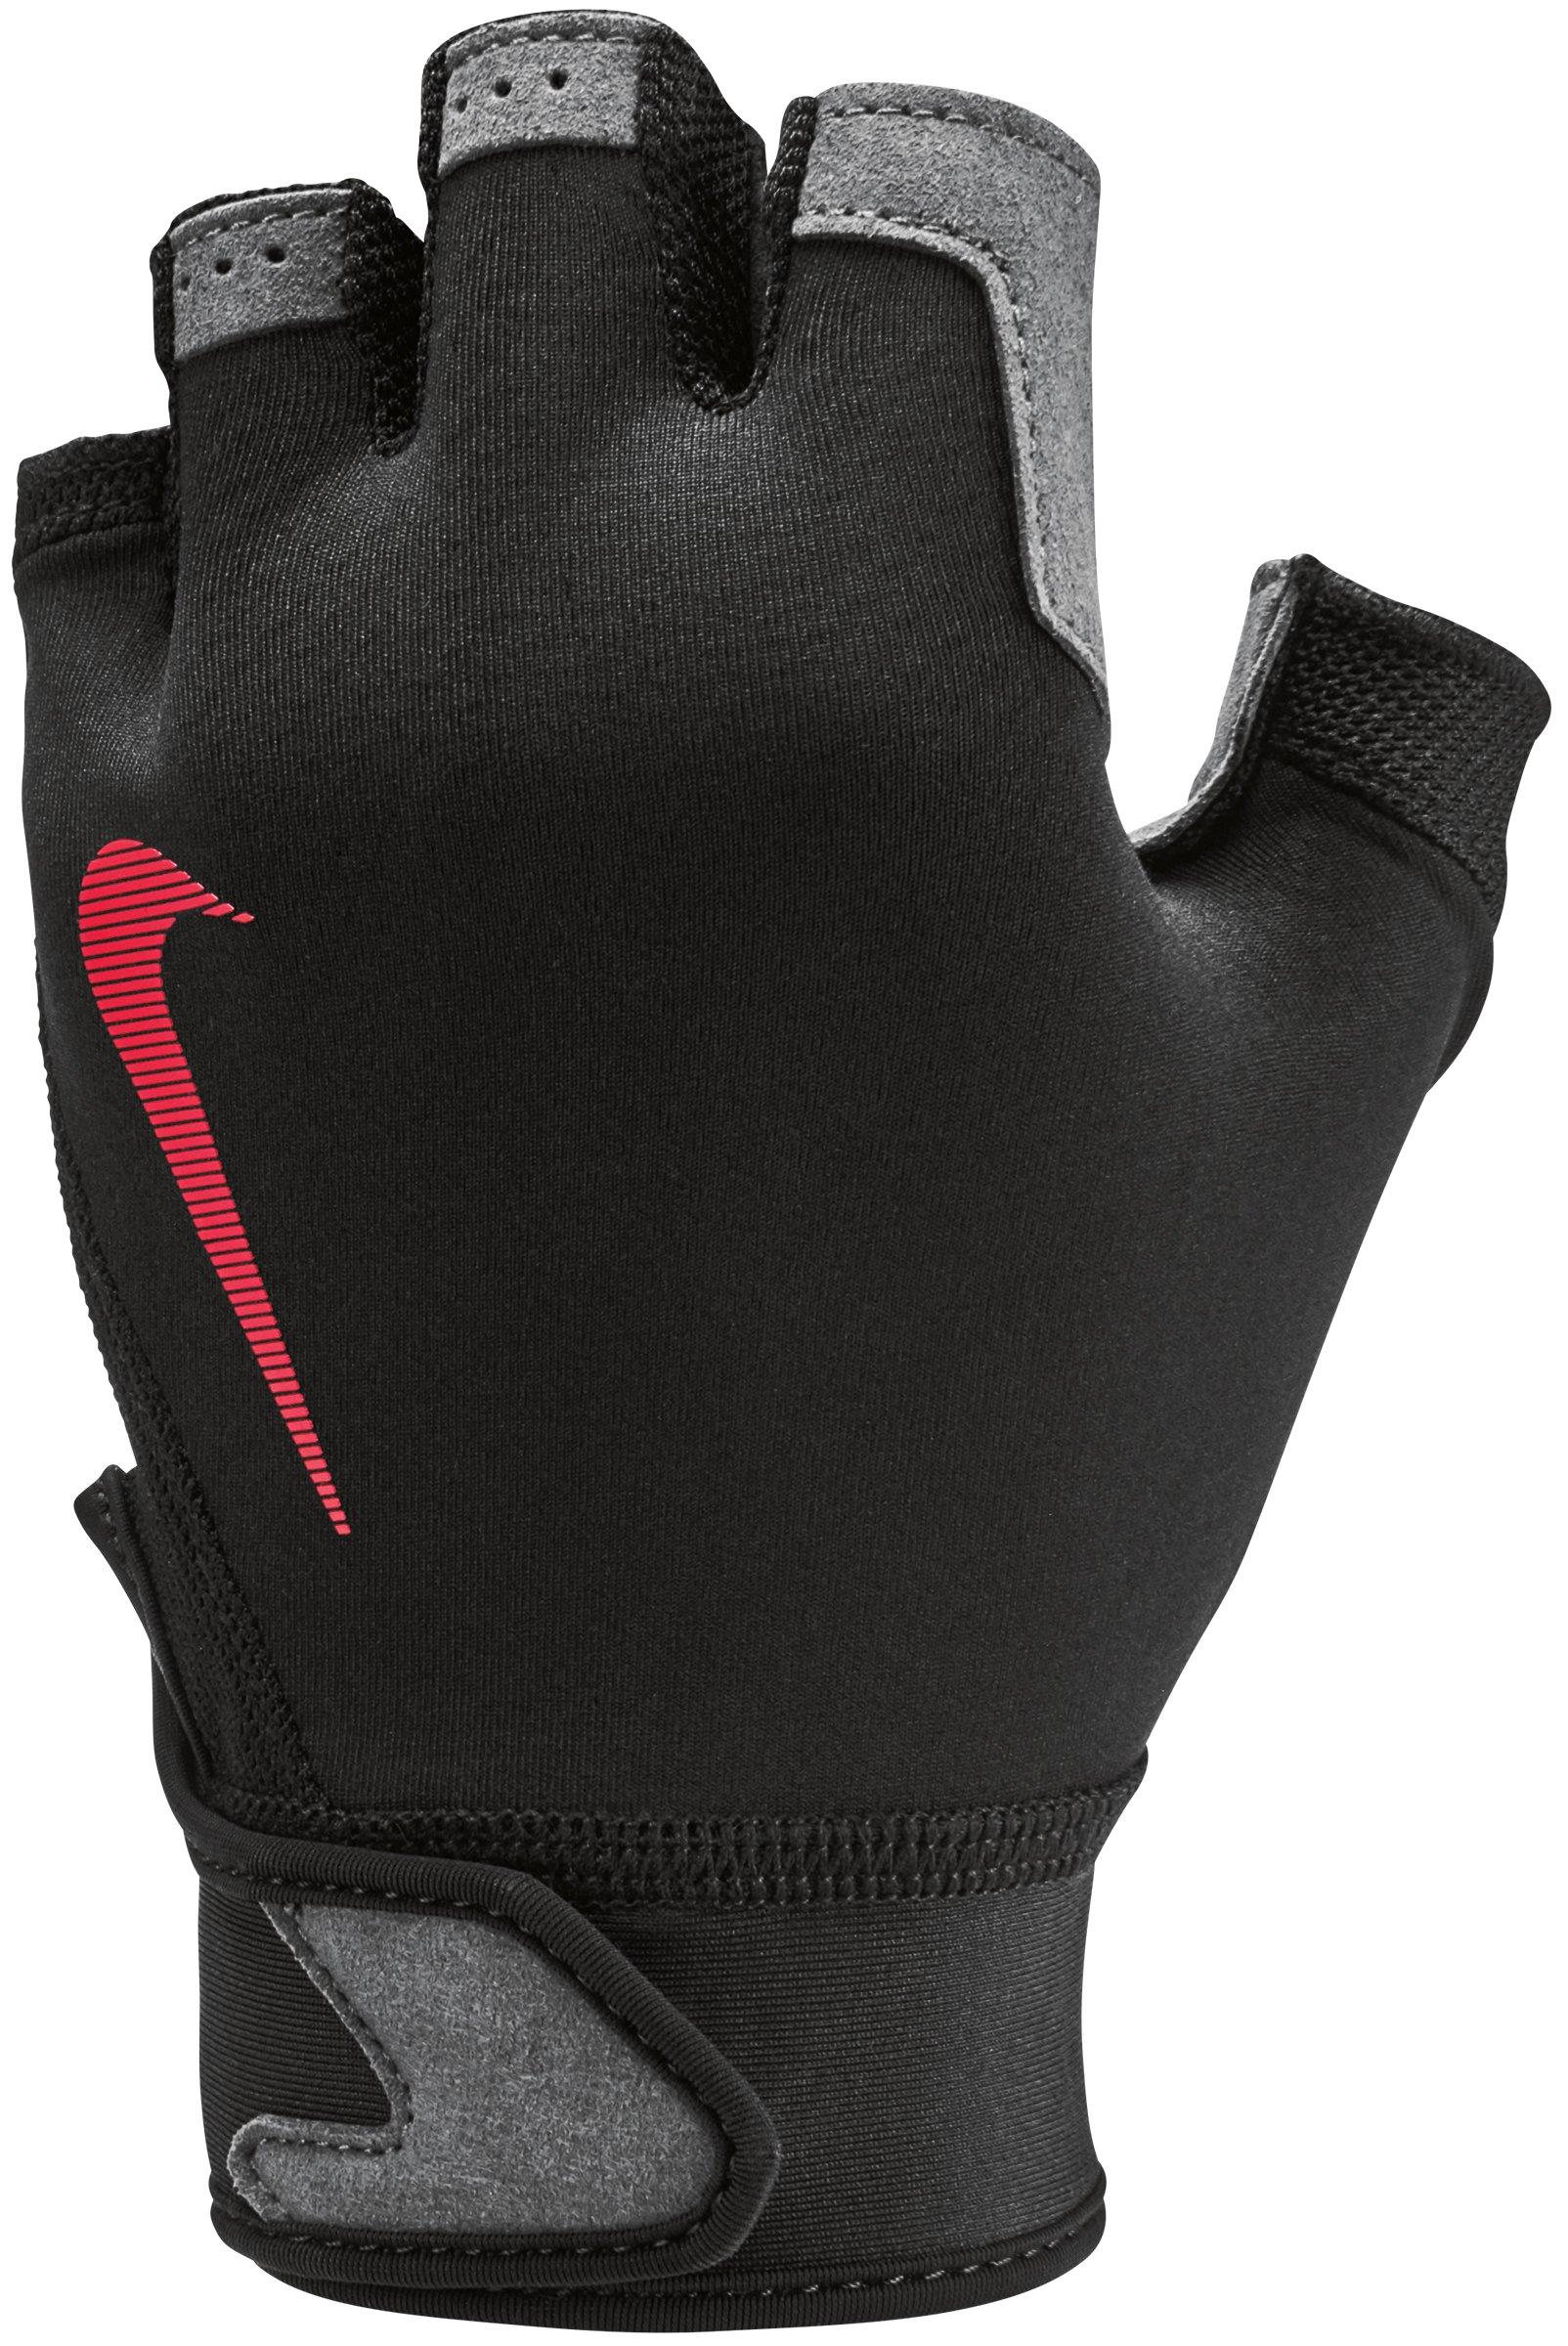 Lieve cement moeilijk tevreden te krijgen Nike Men's Ultimate Fitness Gloves